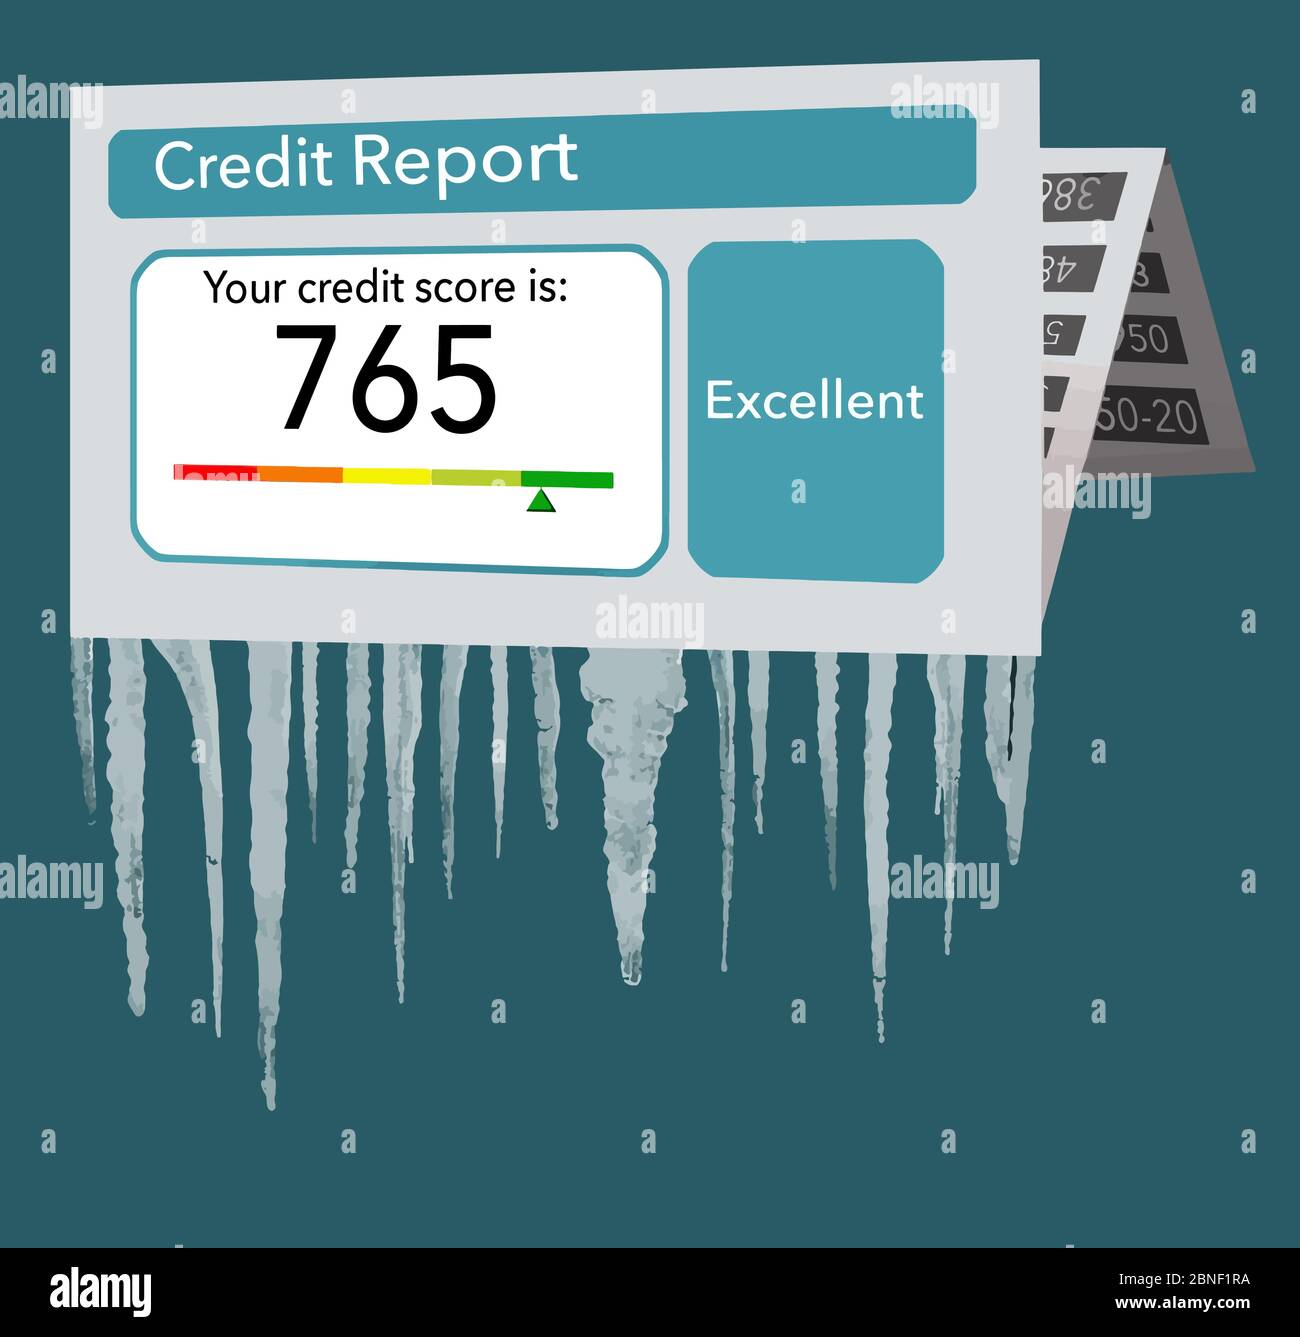 Ein Kredit-Bericht auf Papier wird mit Eiszapfen die Übergabe von ihm in diesem Vektor-Illustration über das Einfrieren Ihrer Kredit-Bericht gesehen. Stock Vektor